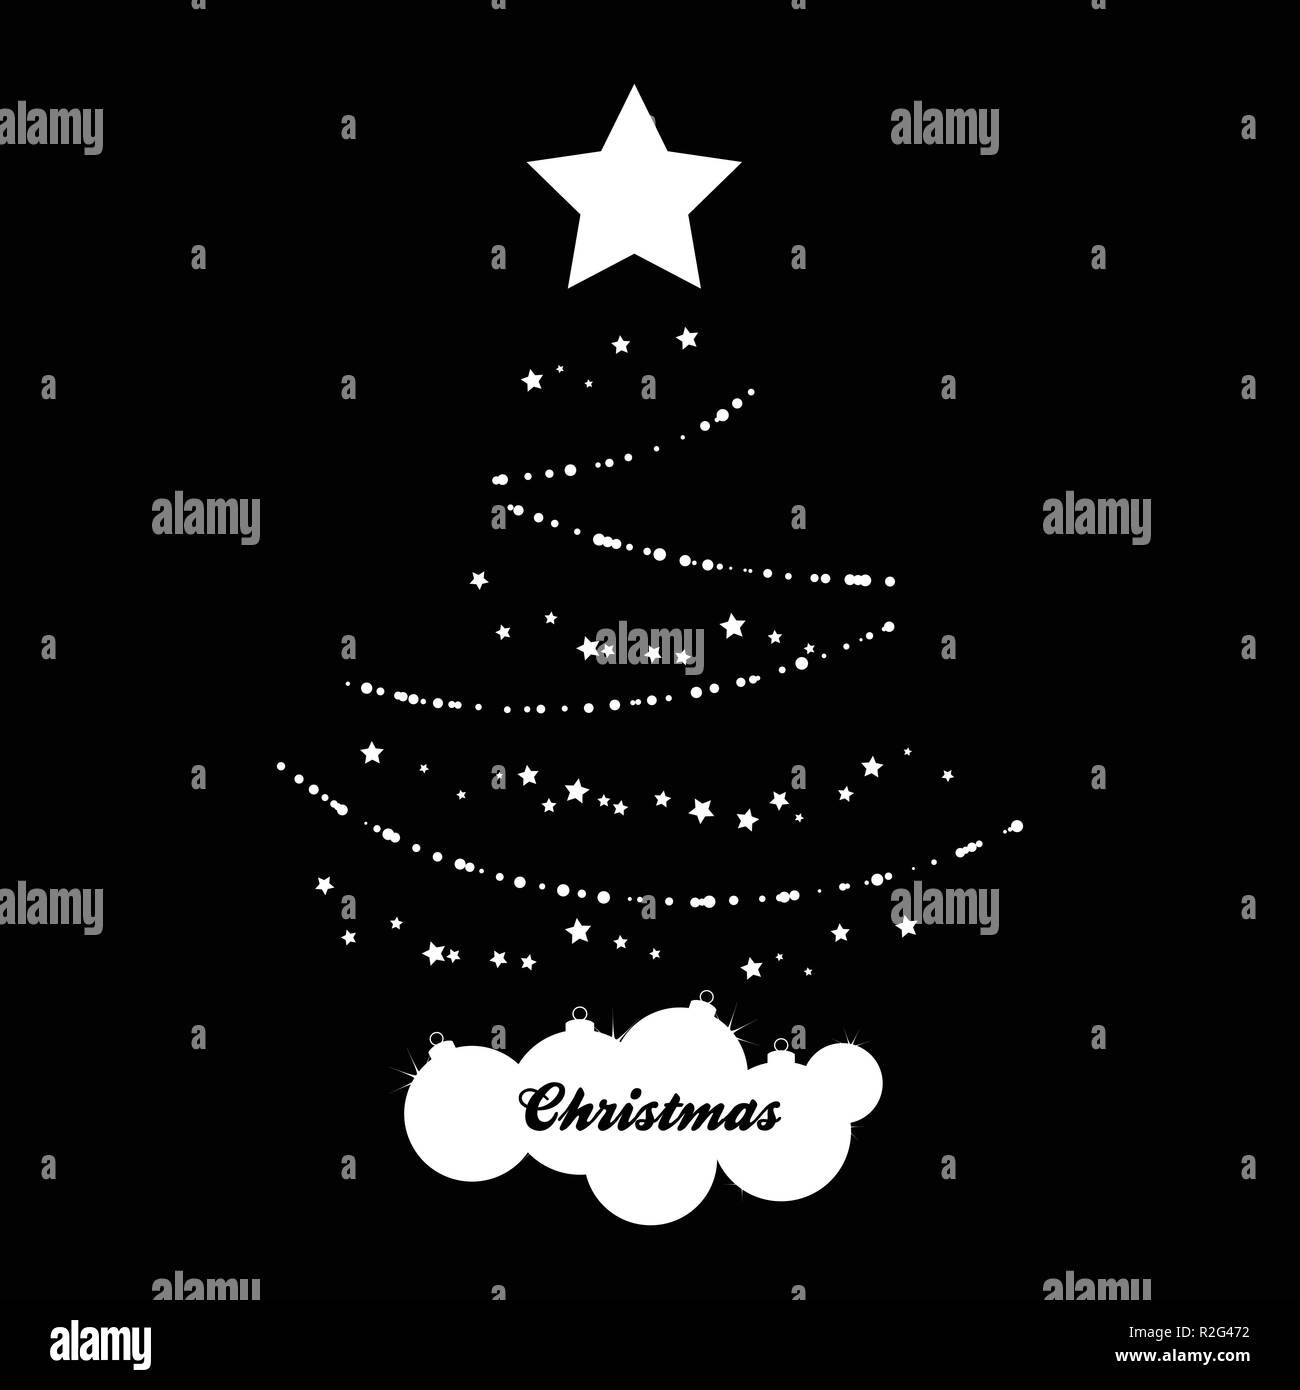 Abstrakte weiße Silhouette der Weihnachtsbaum mit Sterne Flitter und Dekorative Text auf schwarzem Hintergrund Stock Vektor